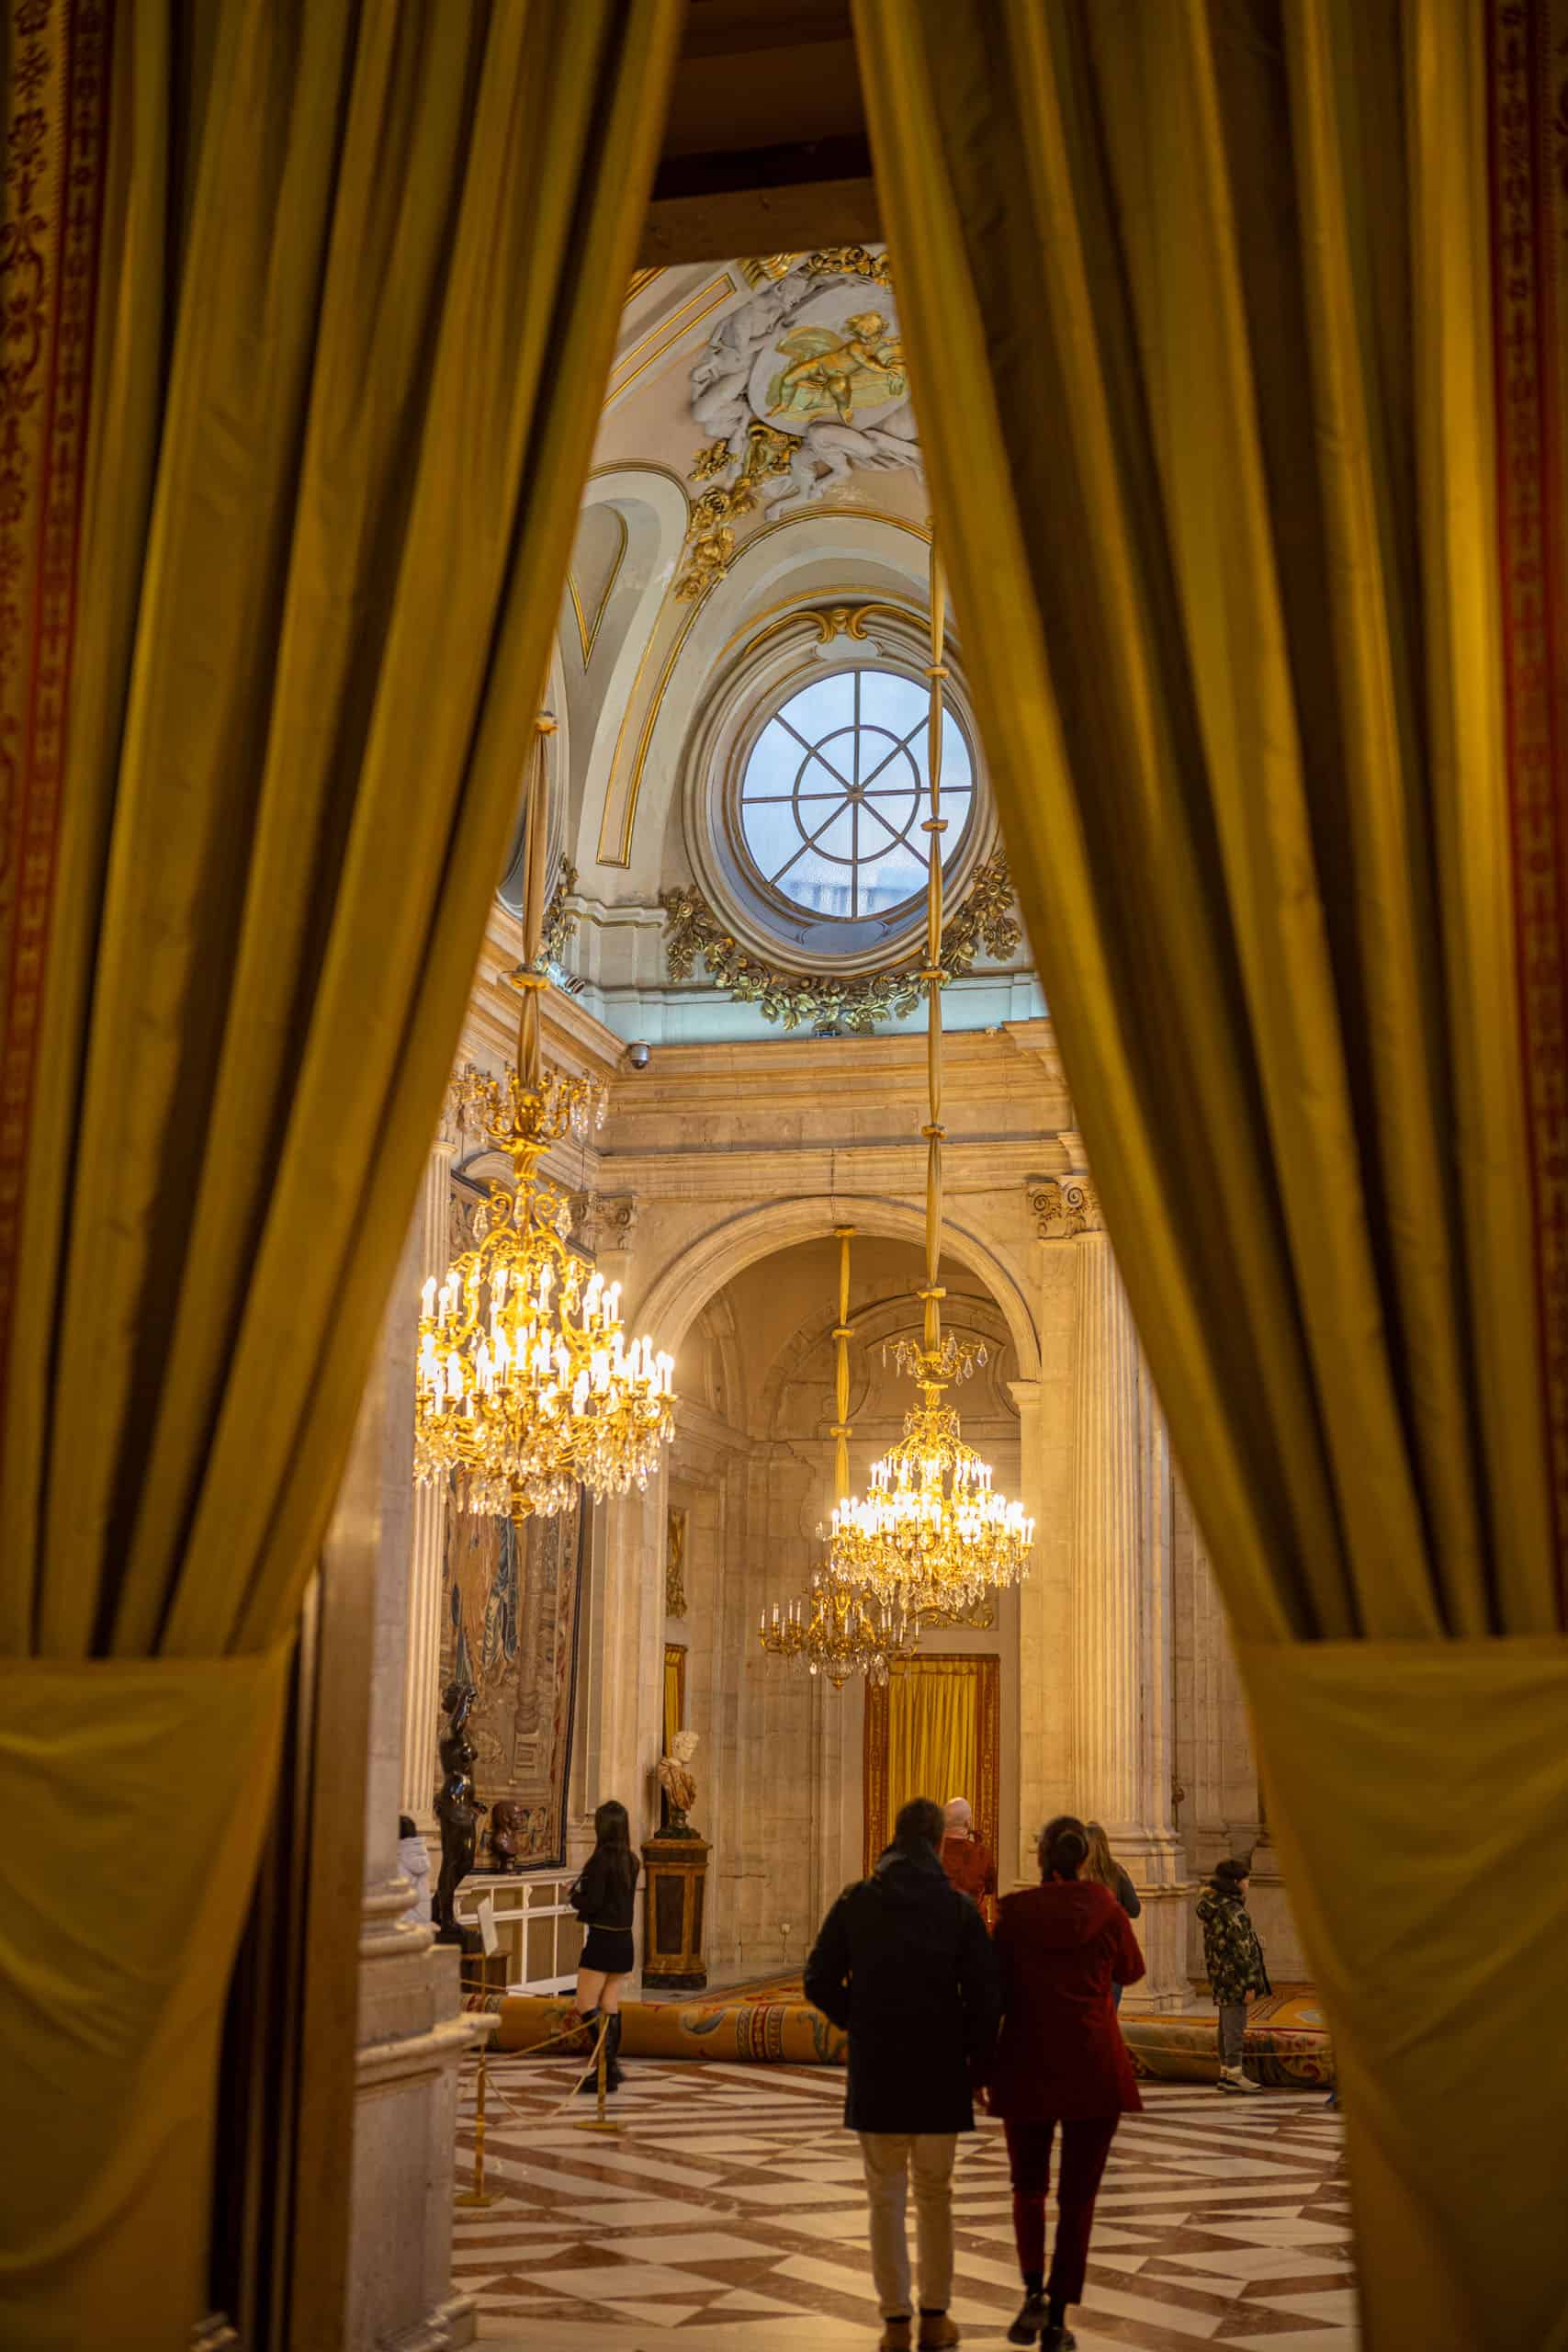 Ontvangstzaal in Palacio Real, gezien tussen de gordijnen van de zaal ervoor met rond raam en uitbundige kroonluchters